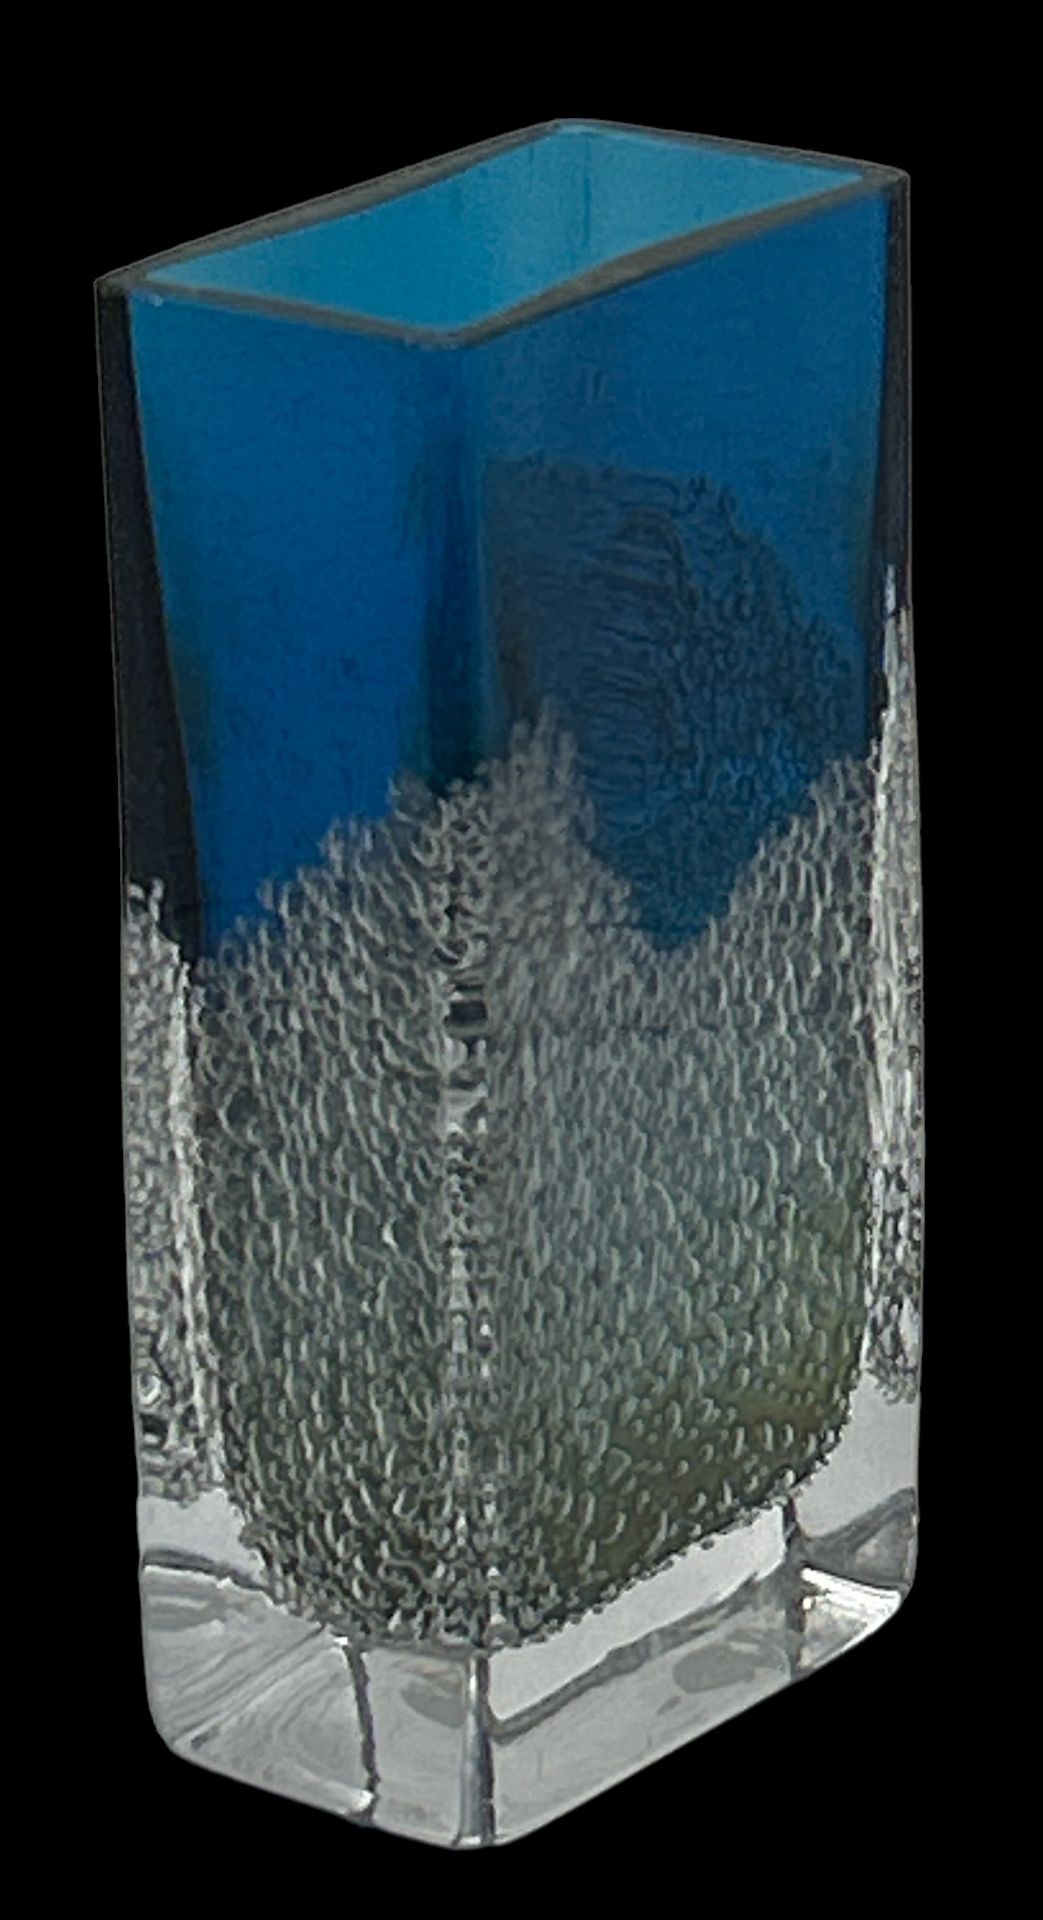 eckige Vase, blau mit Luftbläschen, wohl Zwiesel, H-15,5 cm, 7,5x3,5 cm